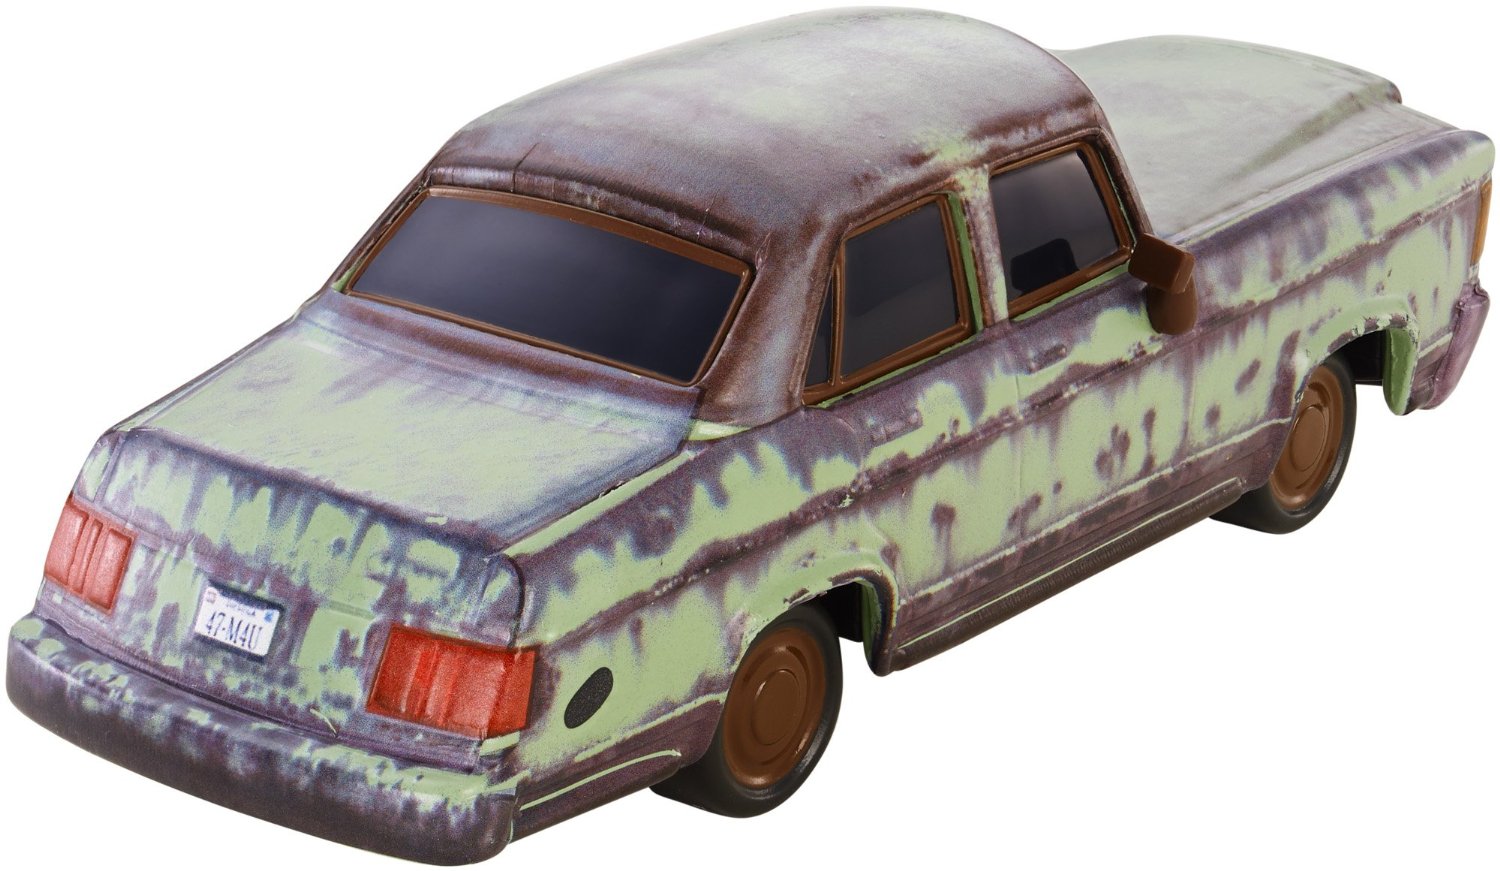 Toy car rust фото 79